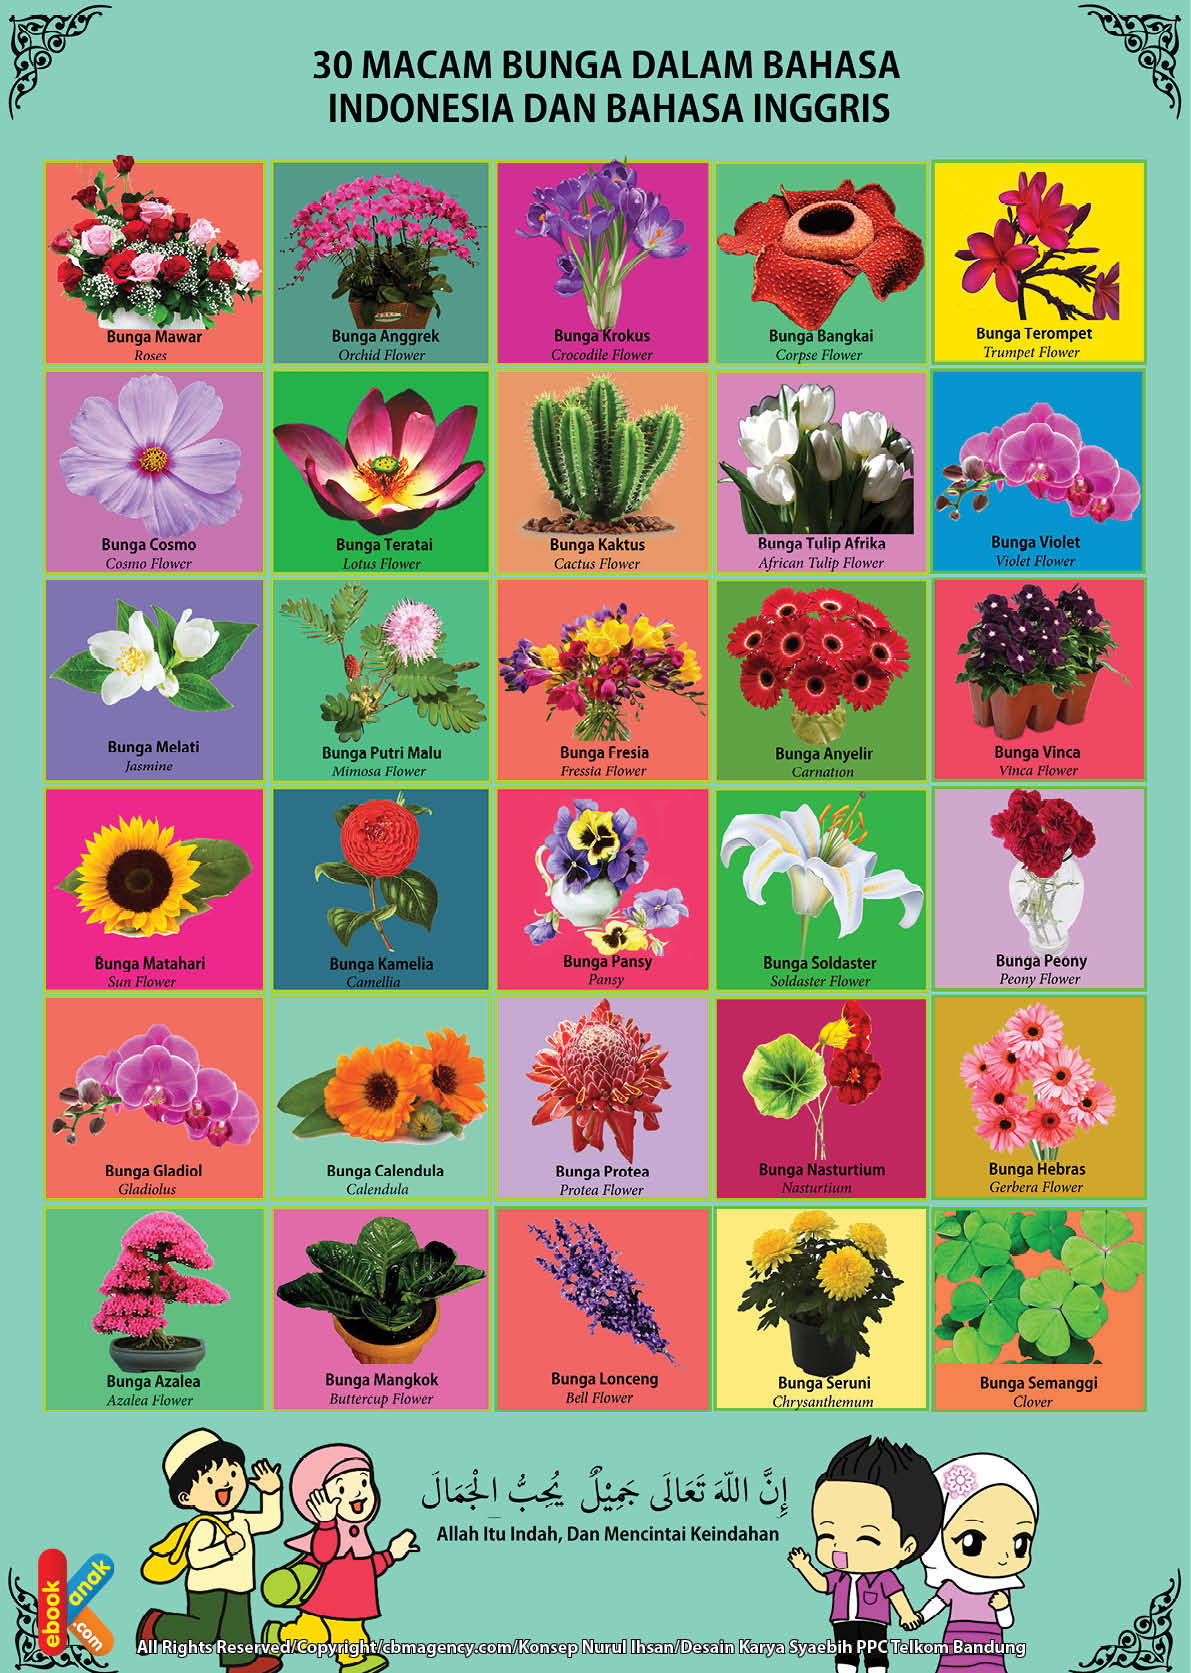 gratis poster belajar mengenal jenis jenis bunga